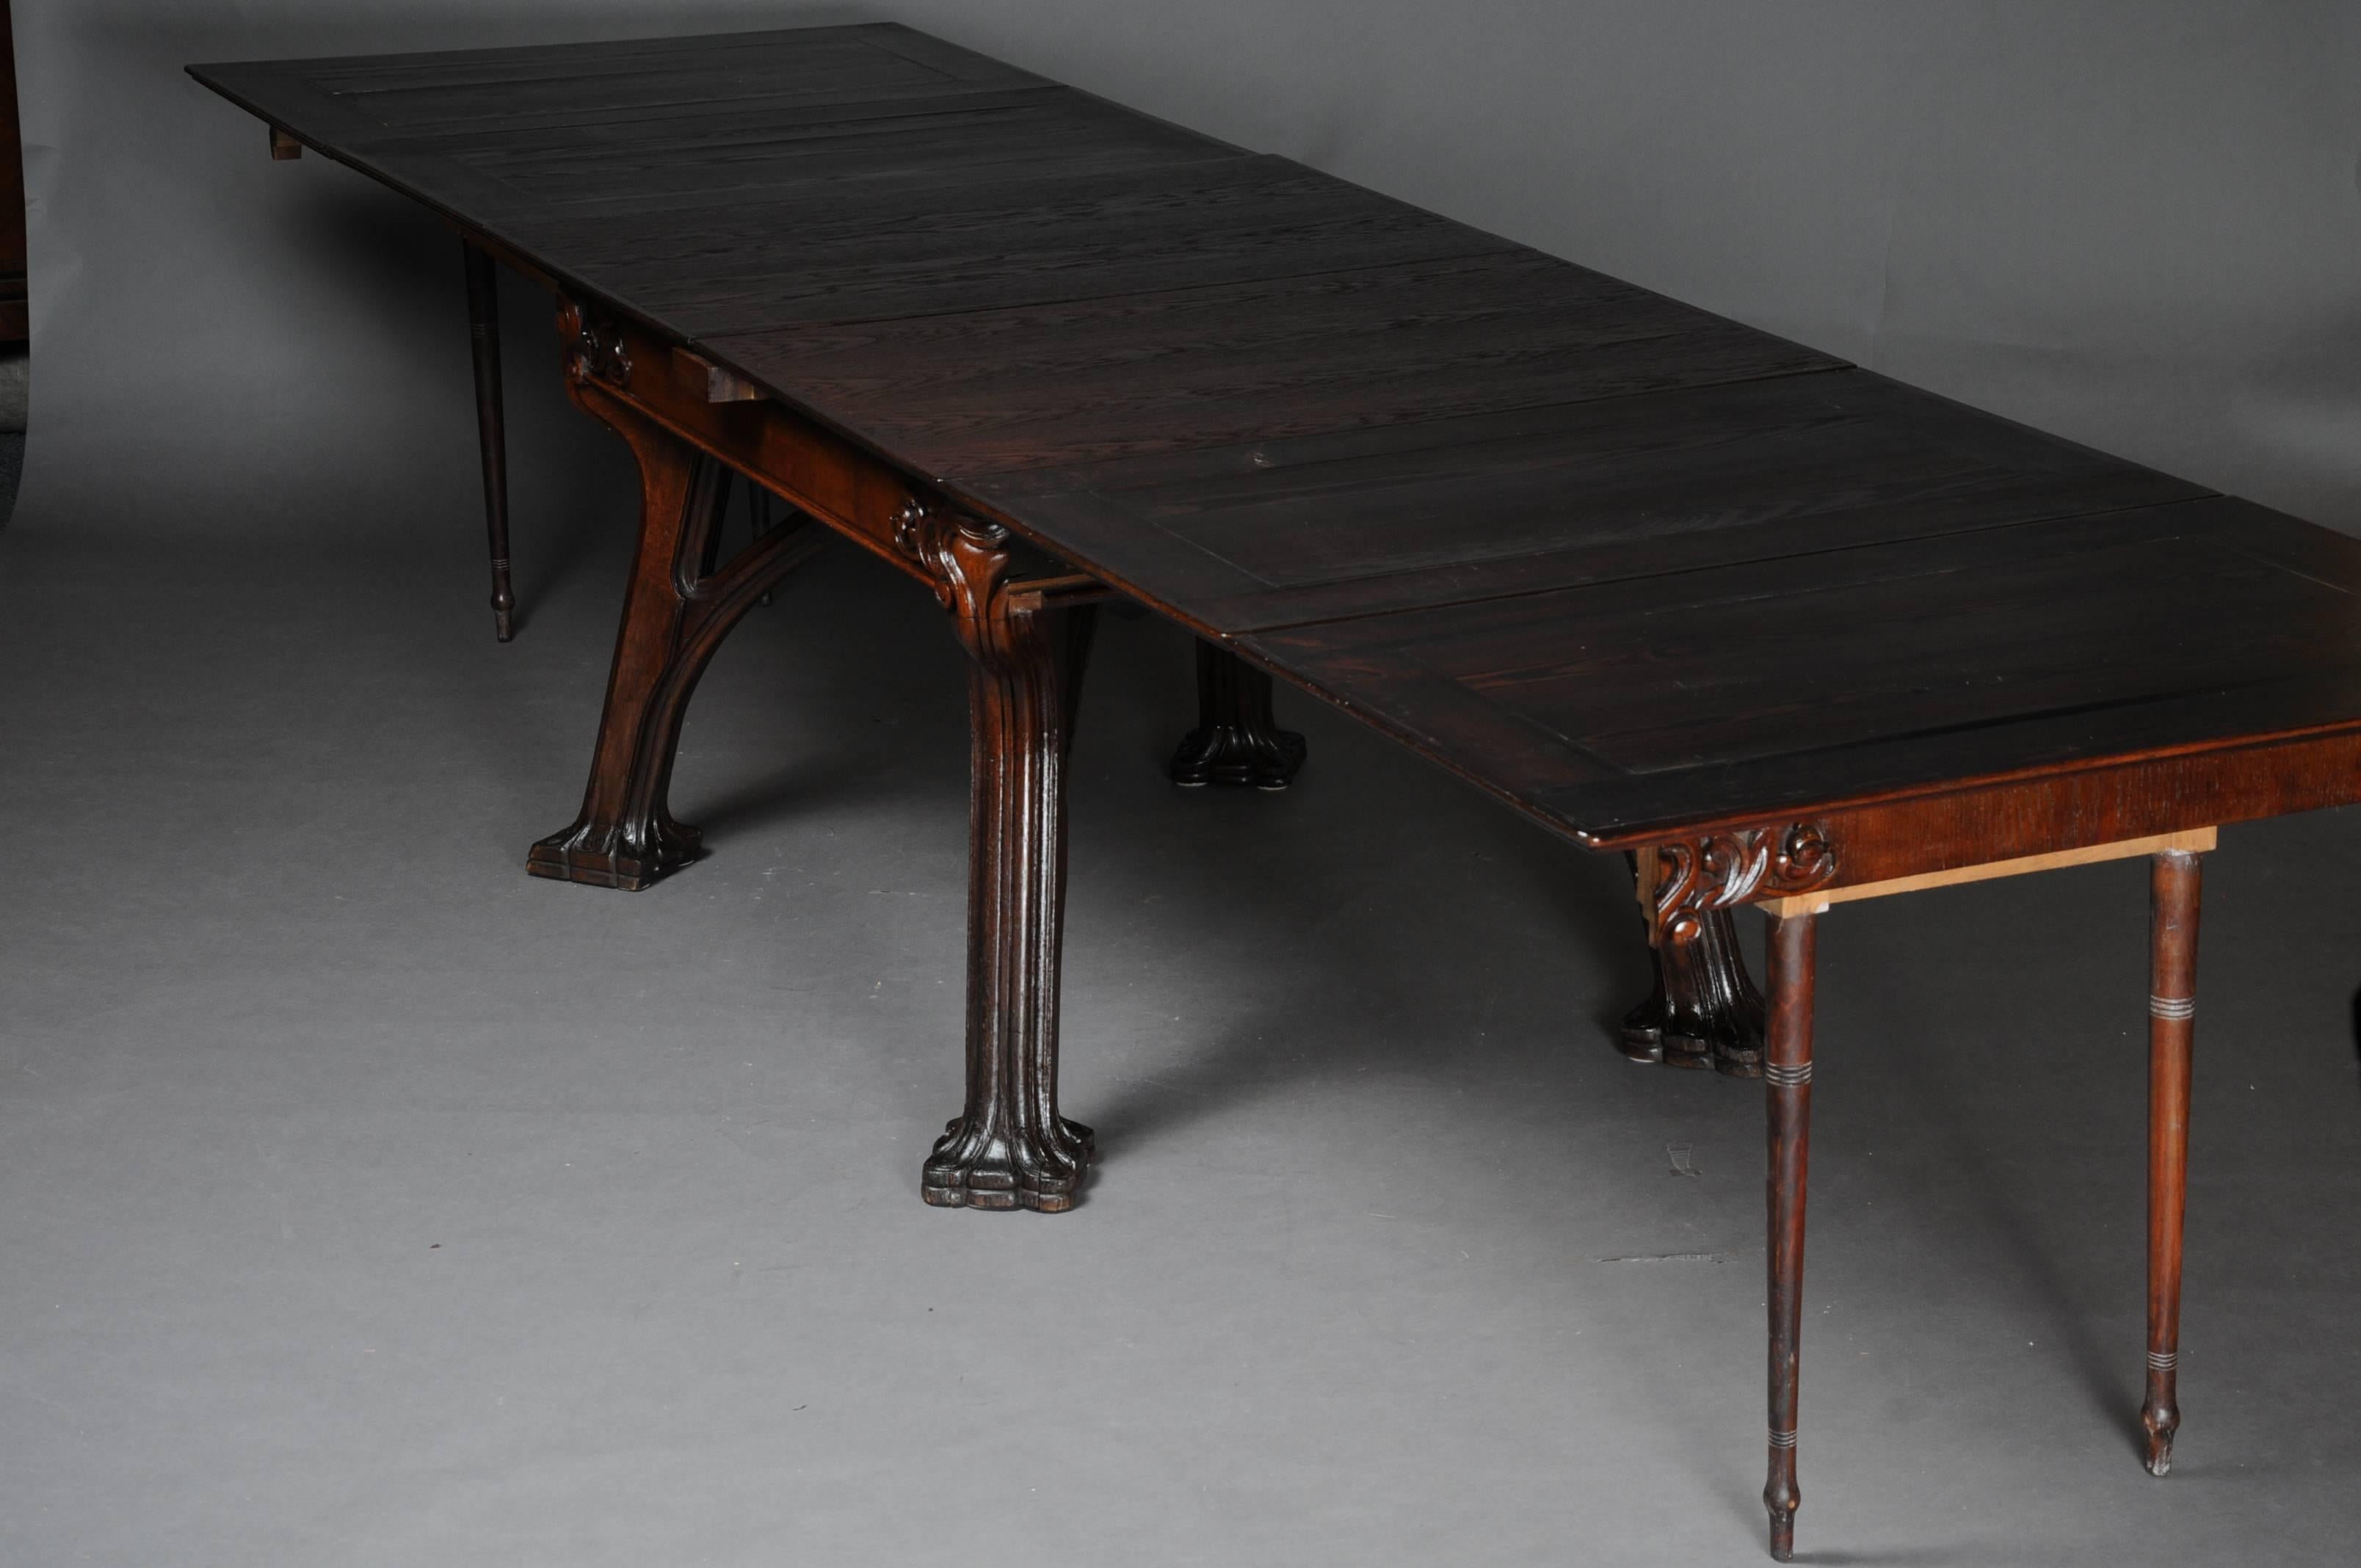 Unique Extendable Table, Art Nouveau, Eugene Gaillard, Solid Oak 1